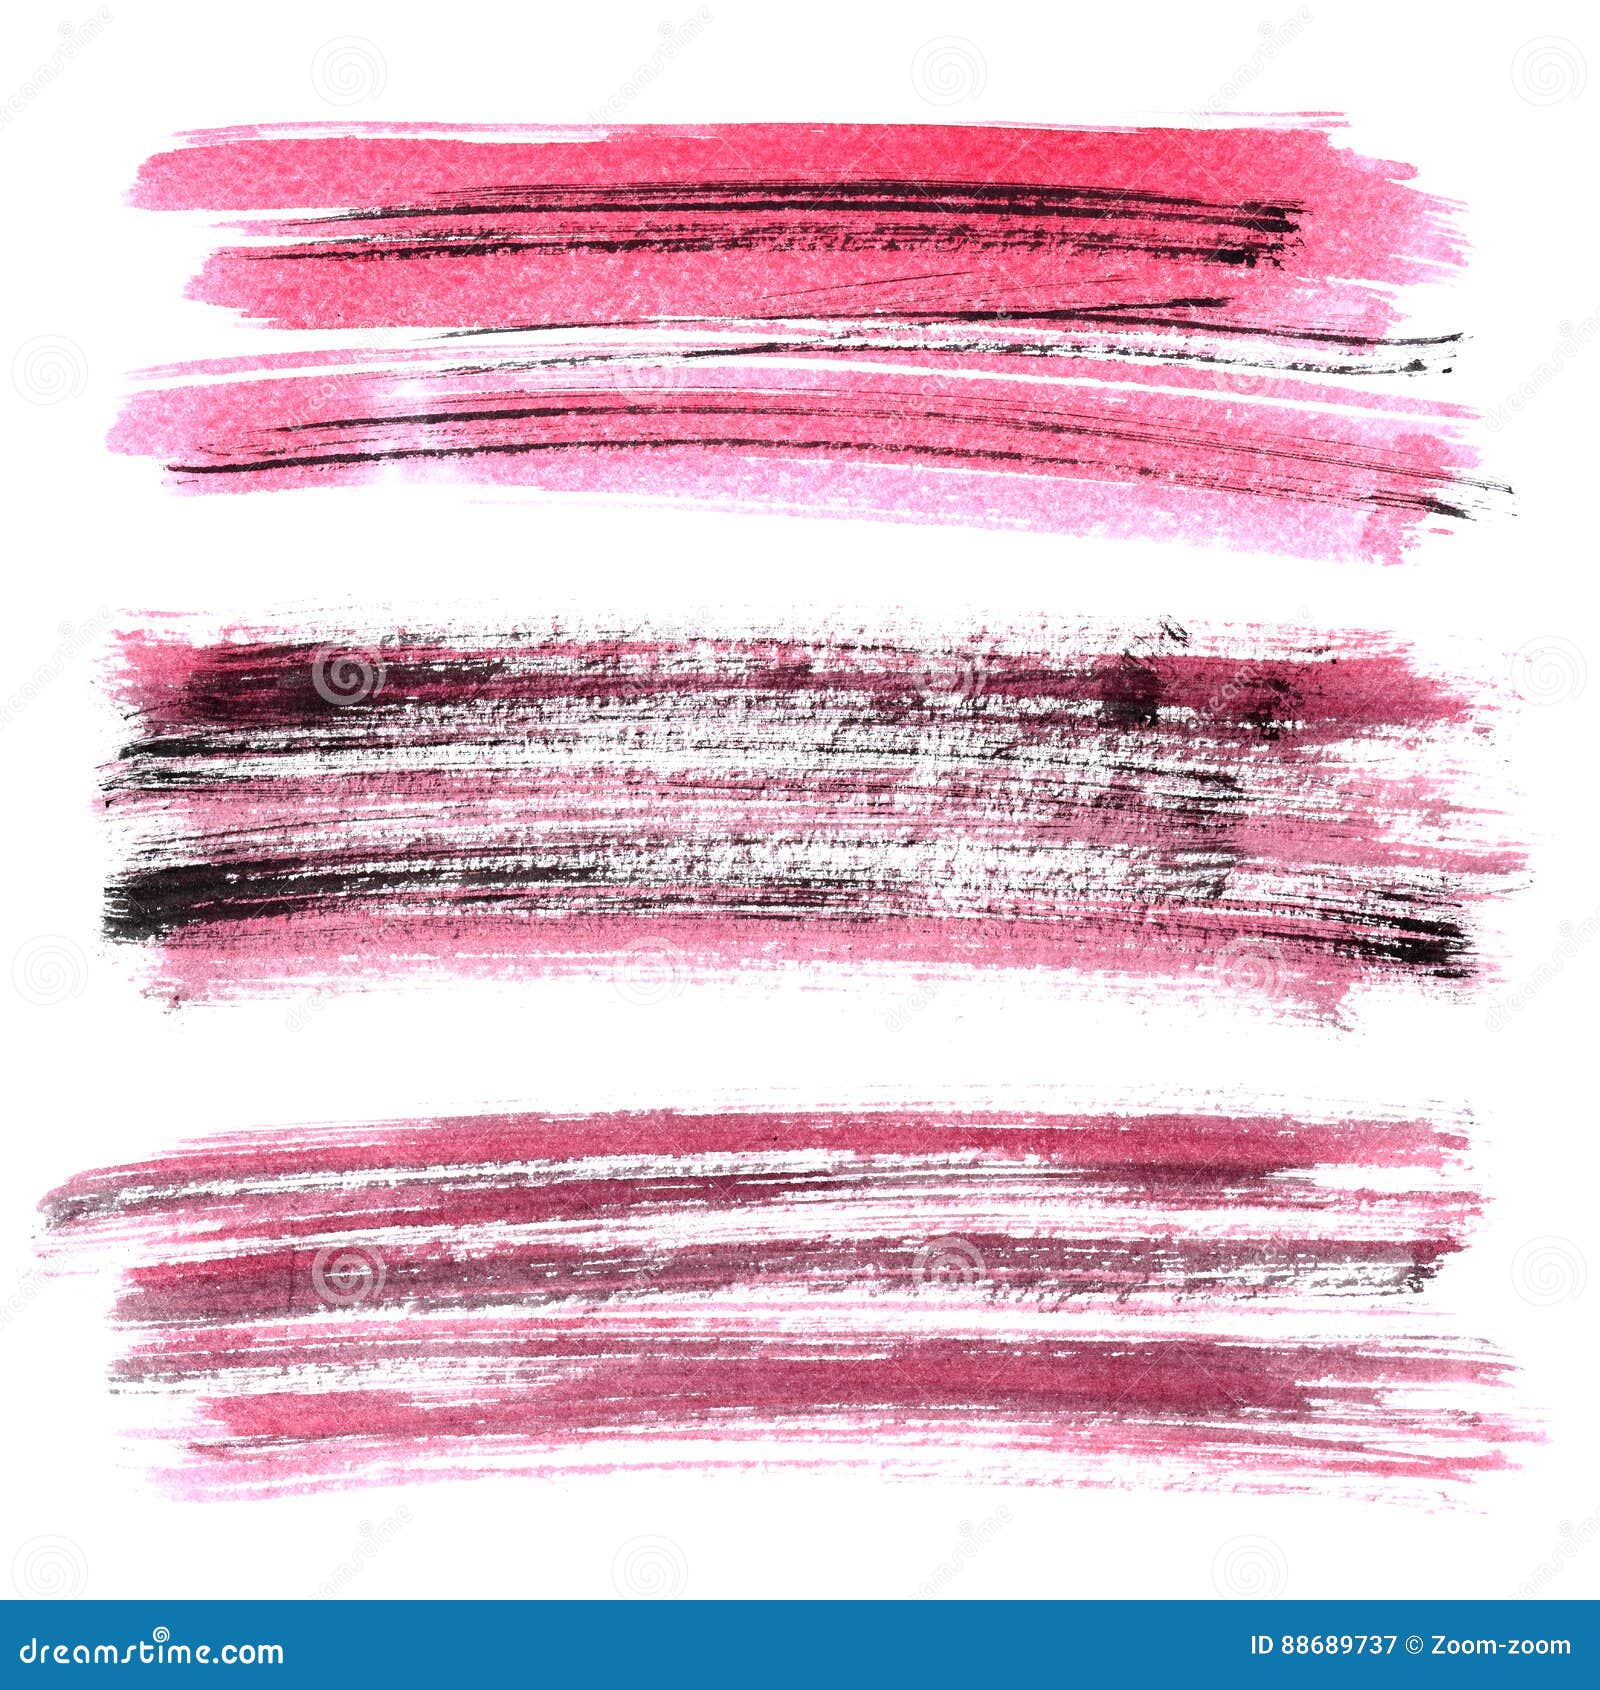 Red grunge brush stroke stock illustration. Illustration of paint ...